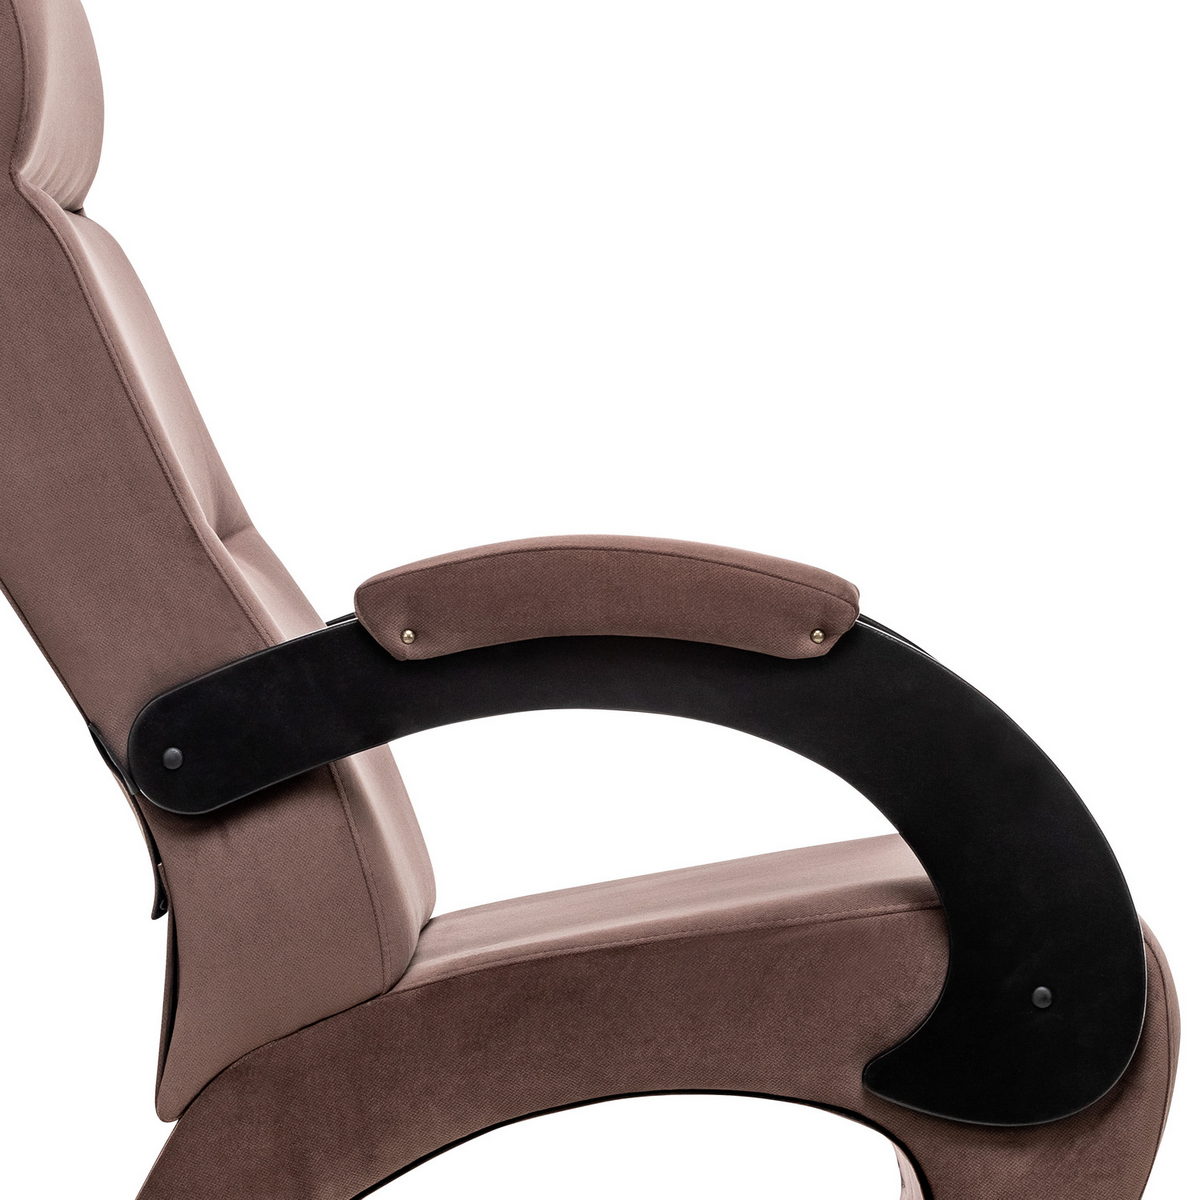 Кресло для отдыха Модель 9-Д (Импэкс). Цвет каркаса: Венге; Цвет обивки: Maxx 235; Цвет ножек: Хром